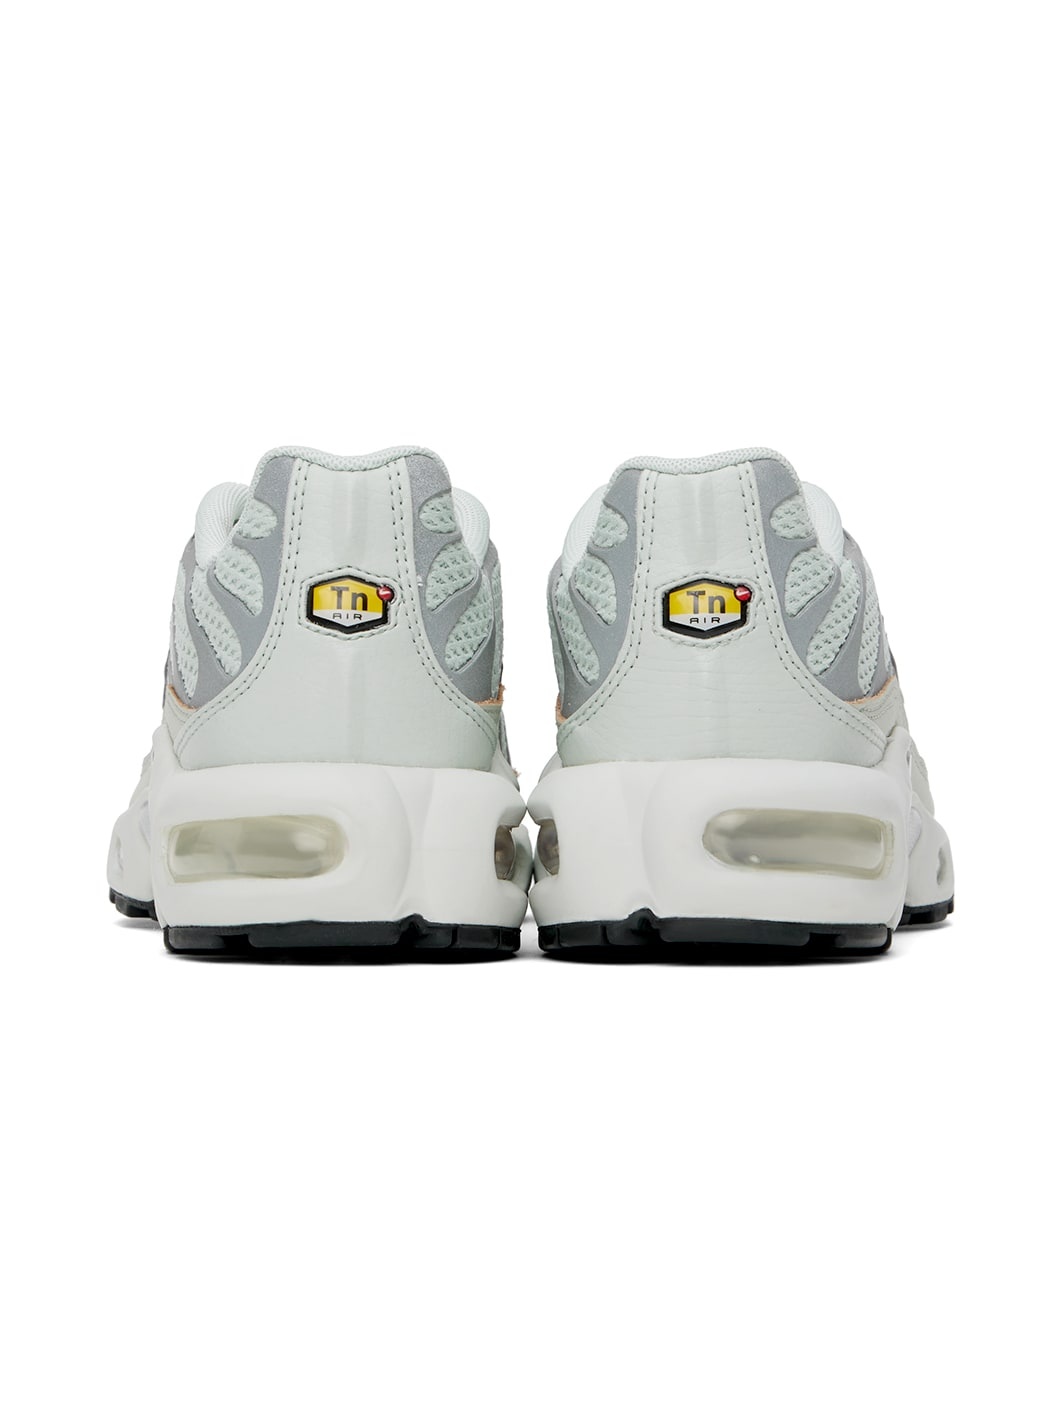 Gray Air Max Plus Sneakers - 2